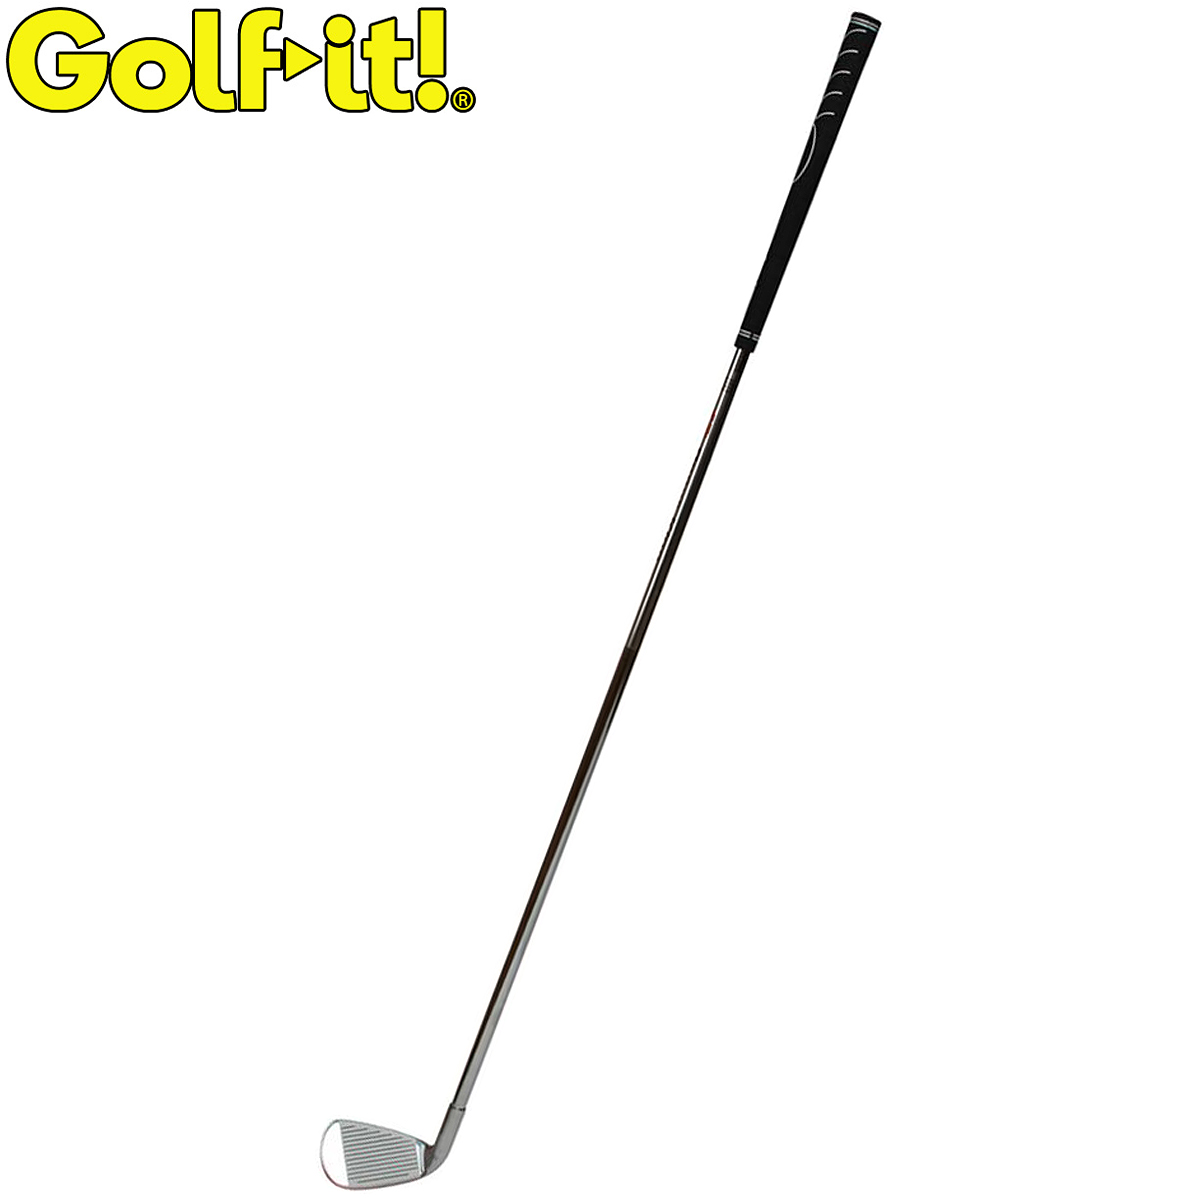 楽天市場】Golfit!(ゴルフイット) LiTE(ライト)日本正規品 パワフルスイング心気体 アイアン練習タイプ 「GF80(M-267)」 「 ゴルフスイング練習用品」 【あす楽対応】 : ＥＺＡＫＩ ＮＥＴ ＧＯＬＦ